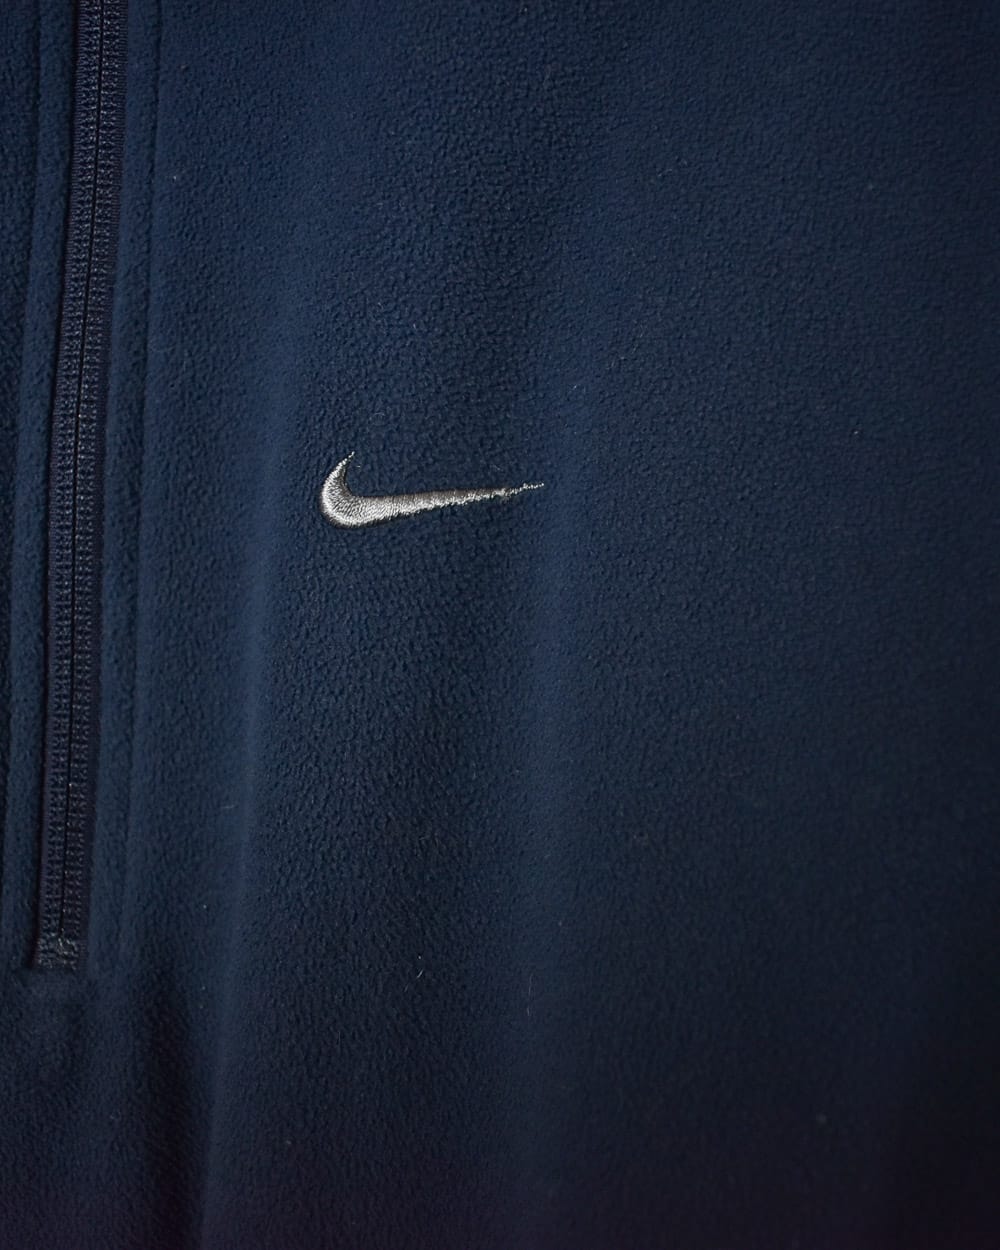 Navy Nike Therma-Fit 1/4 Zip Fleece - Medium